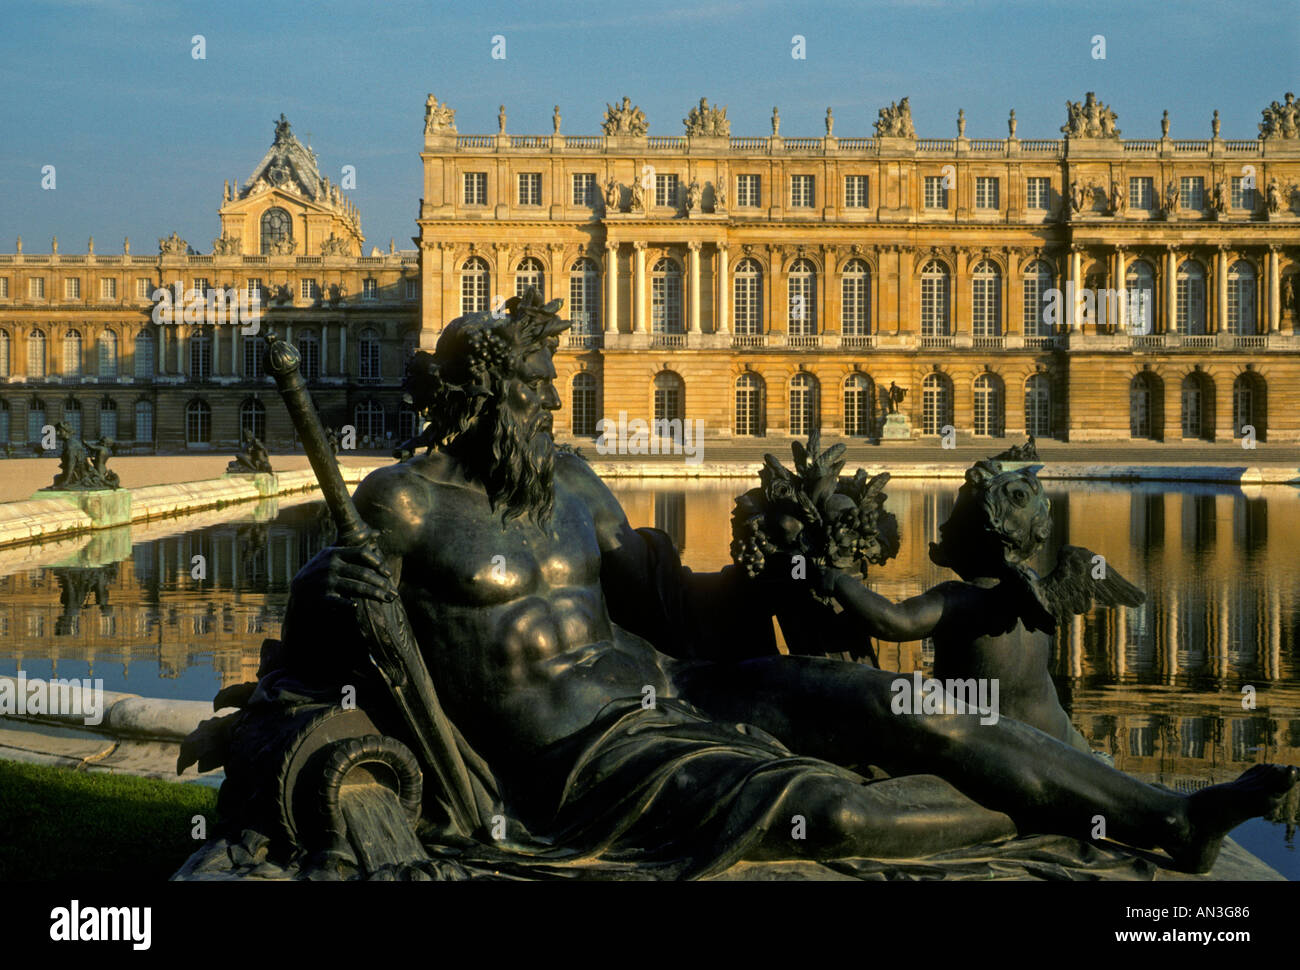 Parterre d'acqua, giardini formali, il Palazzo di Versailles, città di Versailles, regione Ile-de-France, Francia, Europa Foto Stock